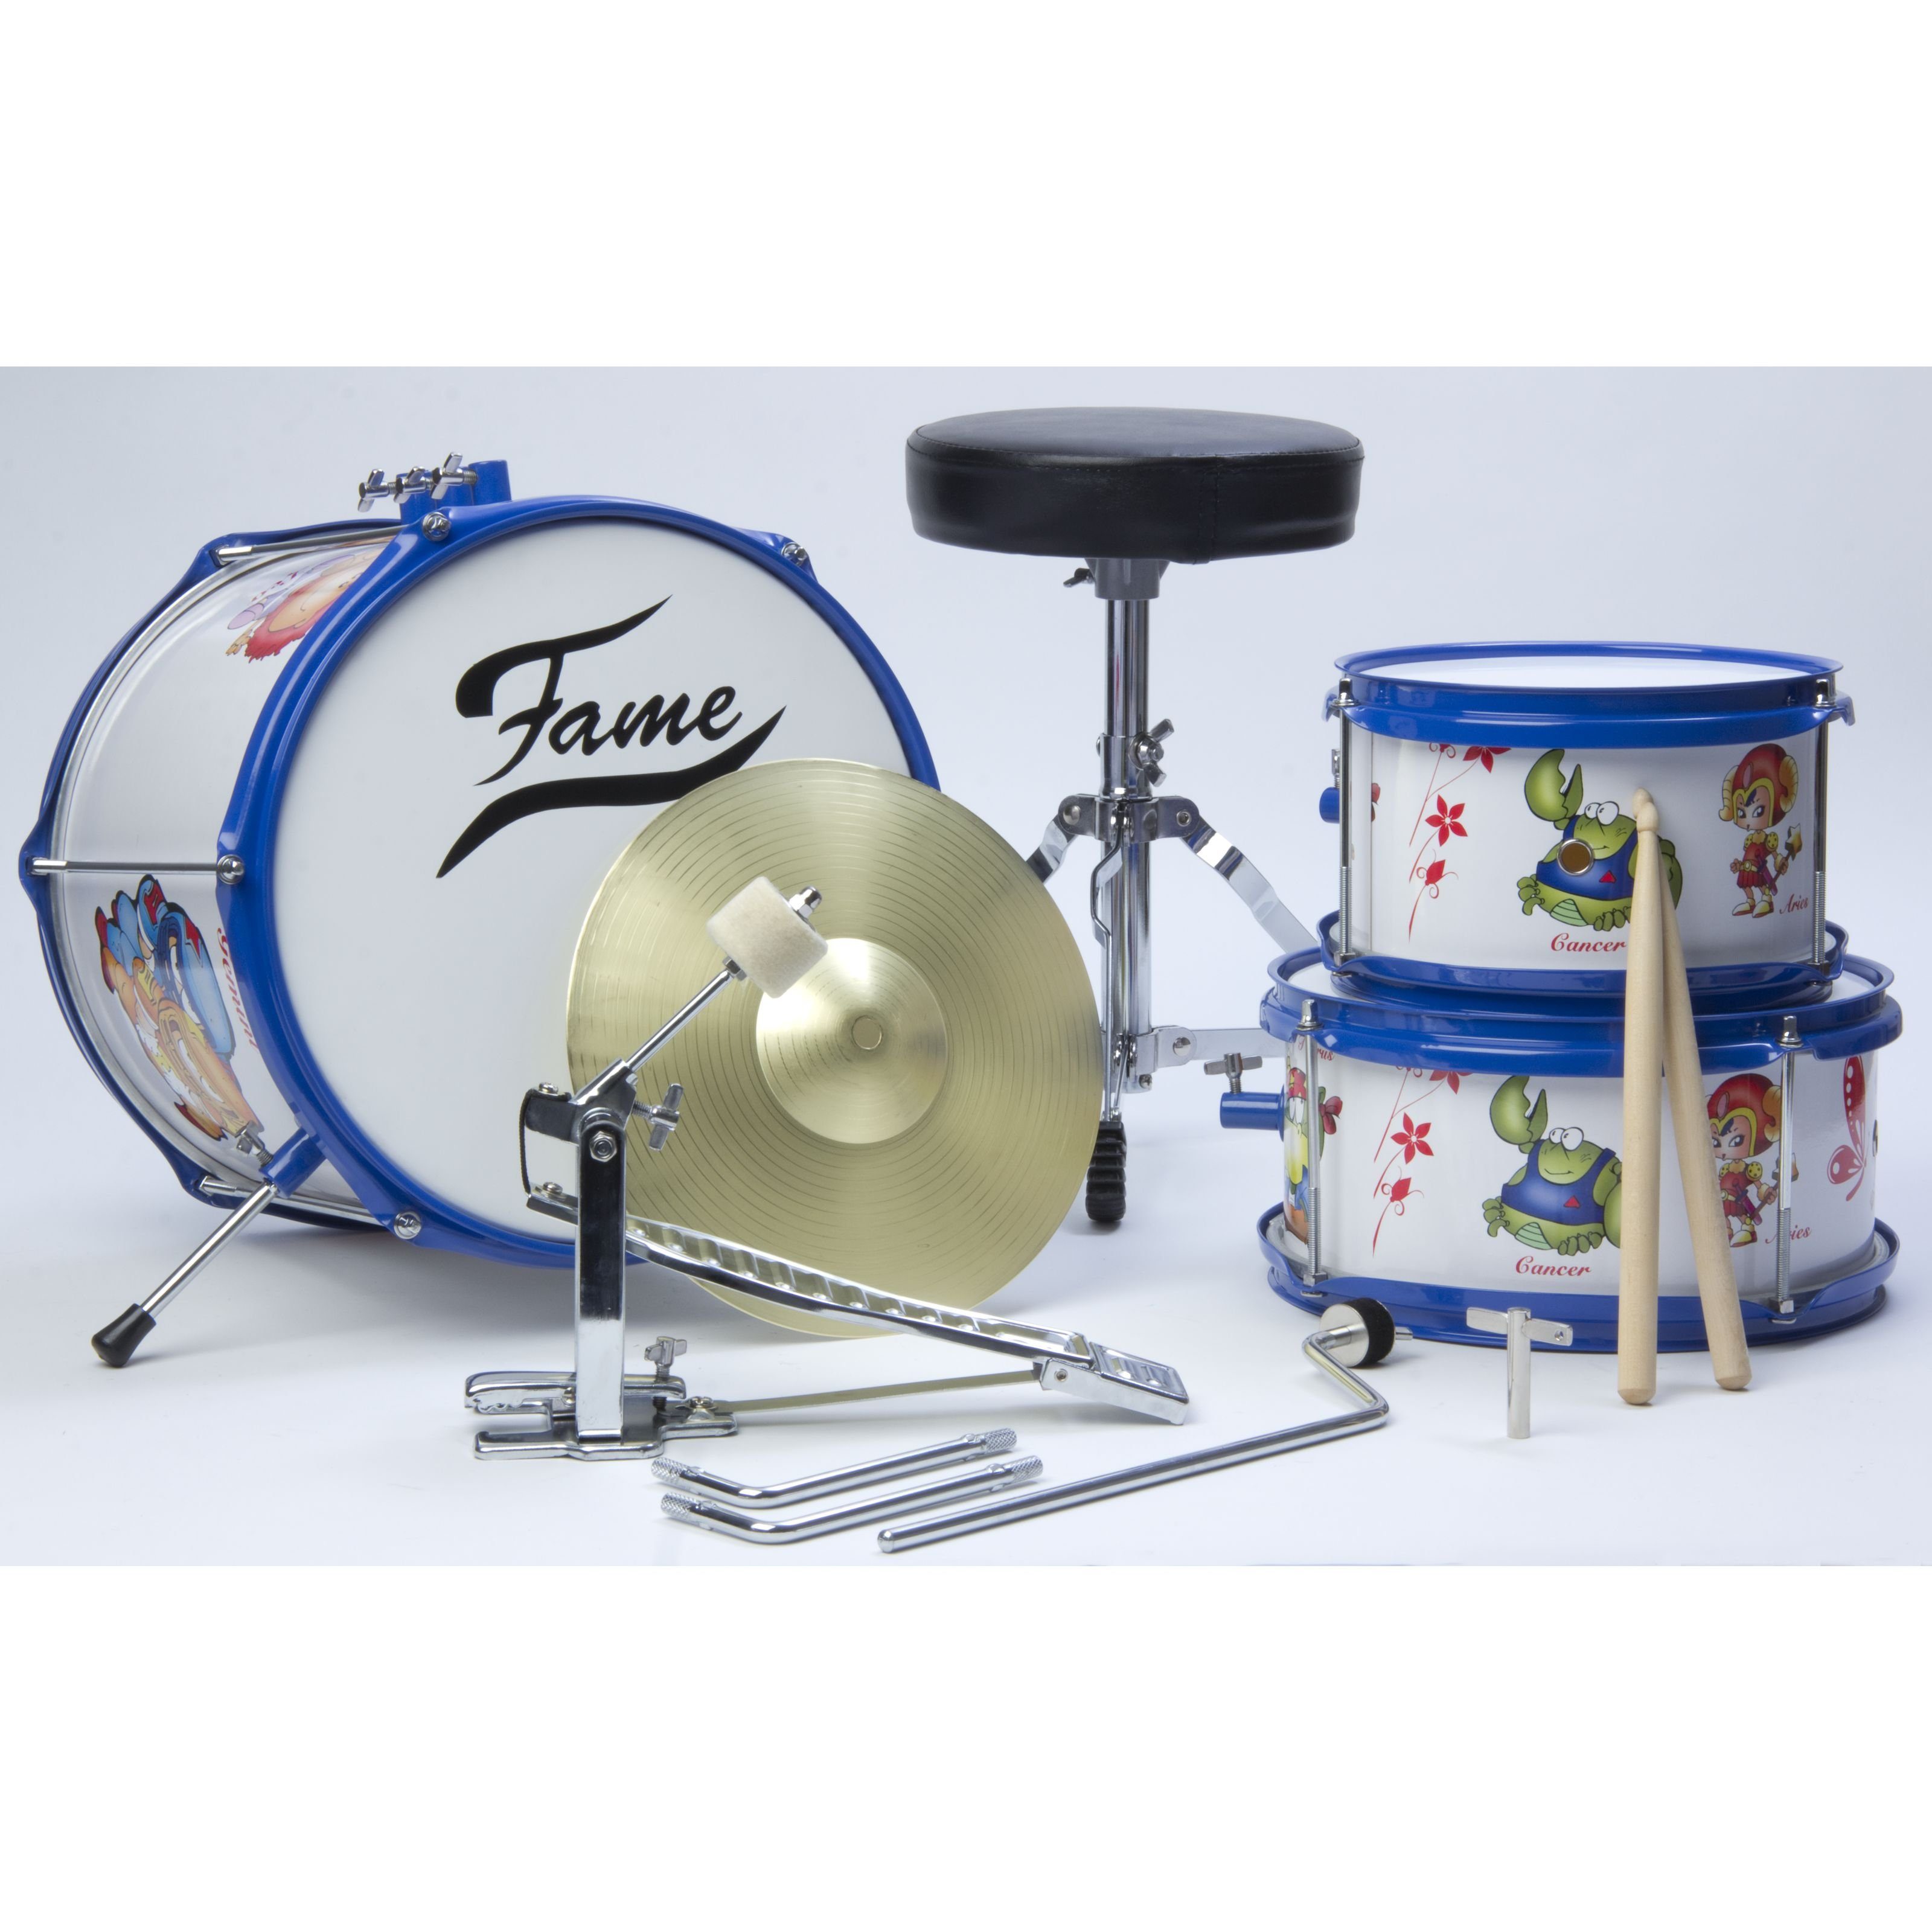 FAME Schlagzeug, Kiddyset 3 PC Junior Drumset Schlagzeug